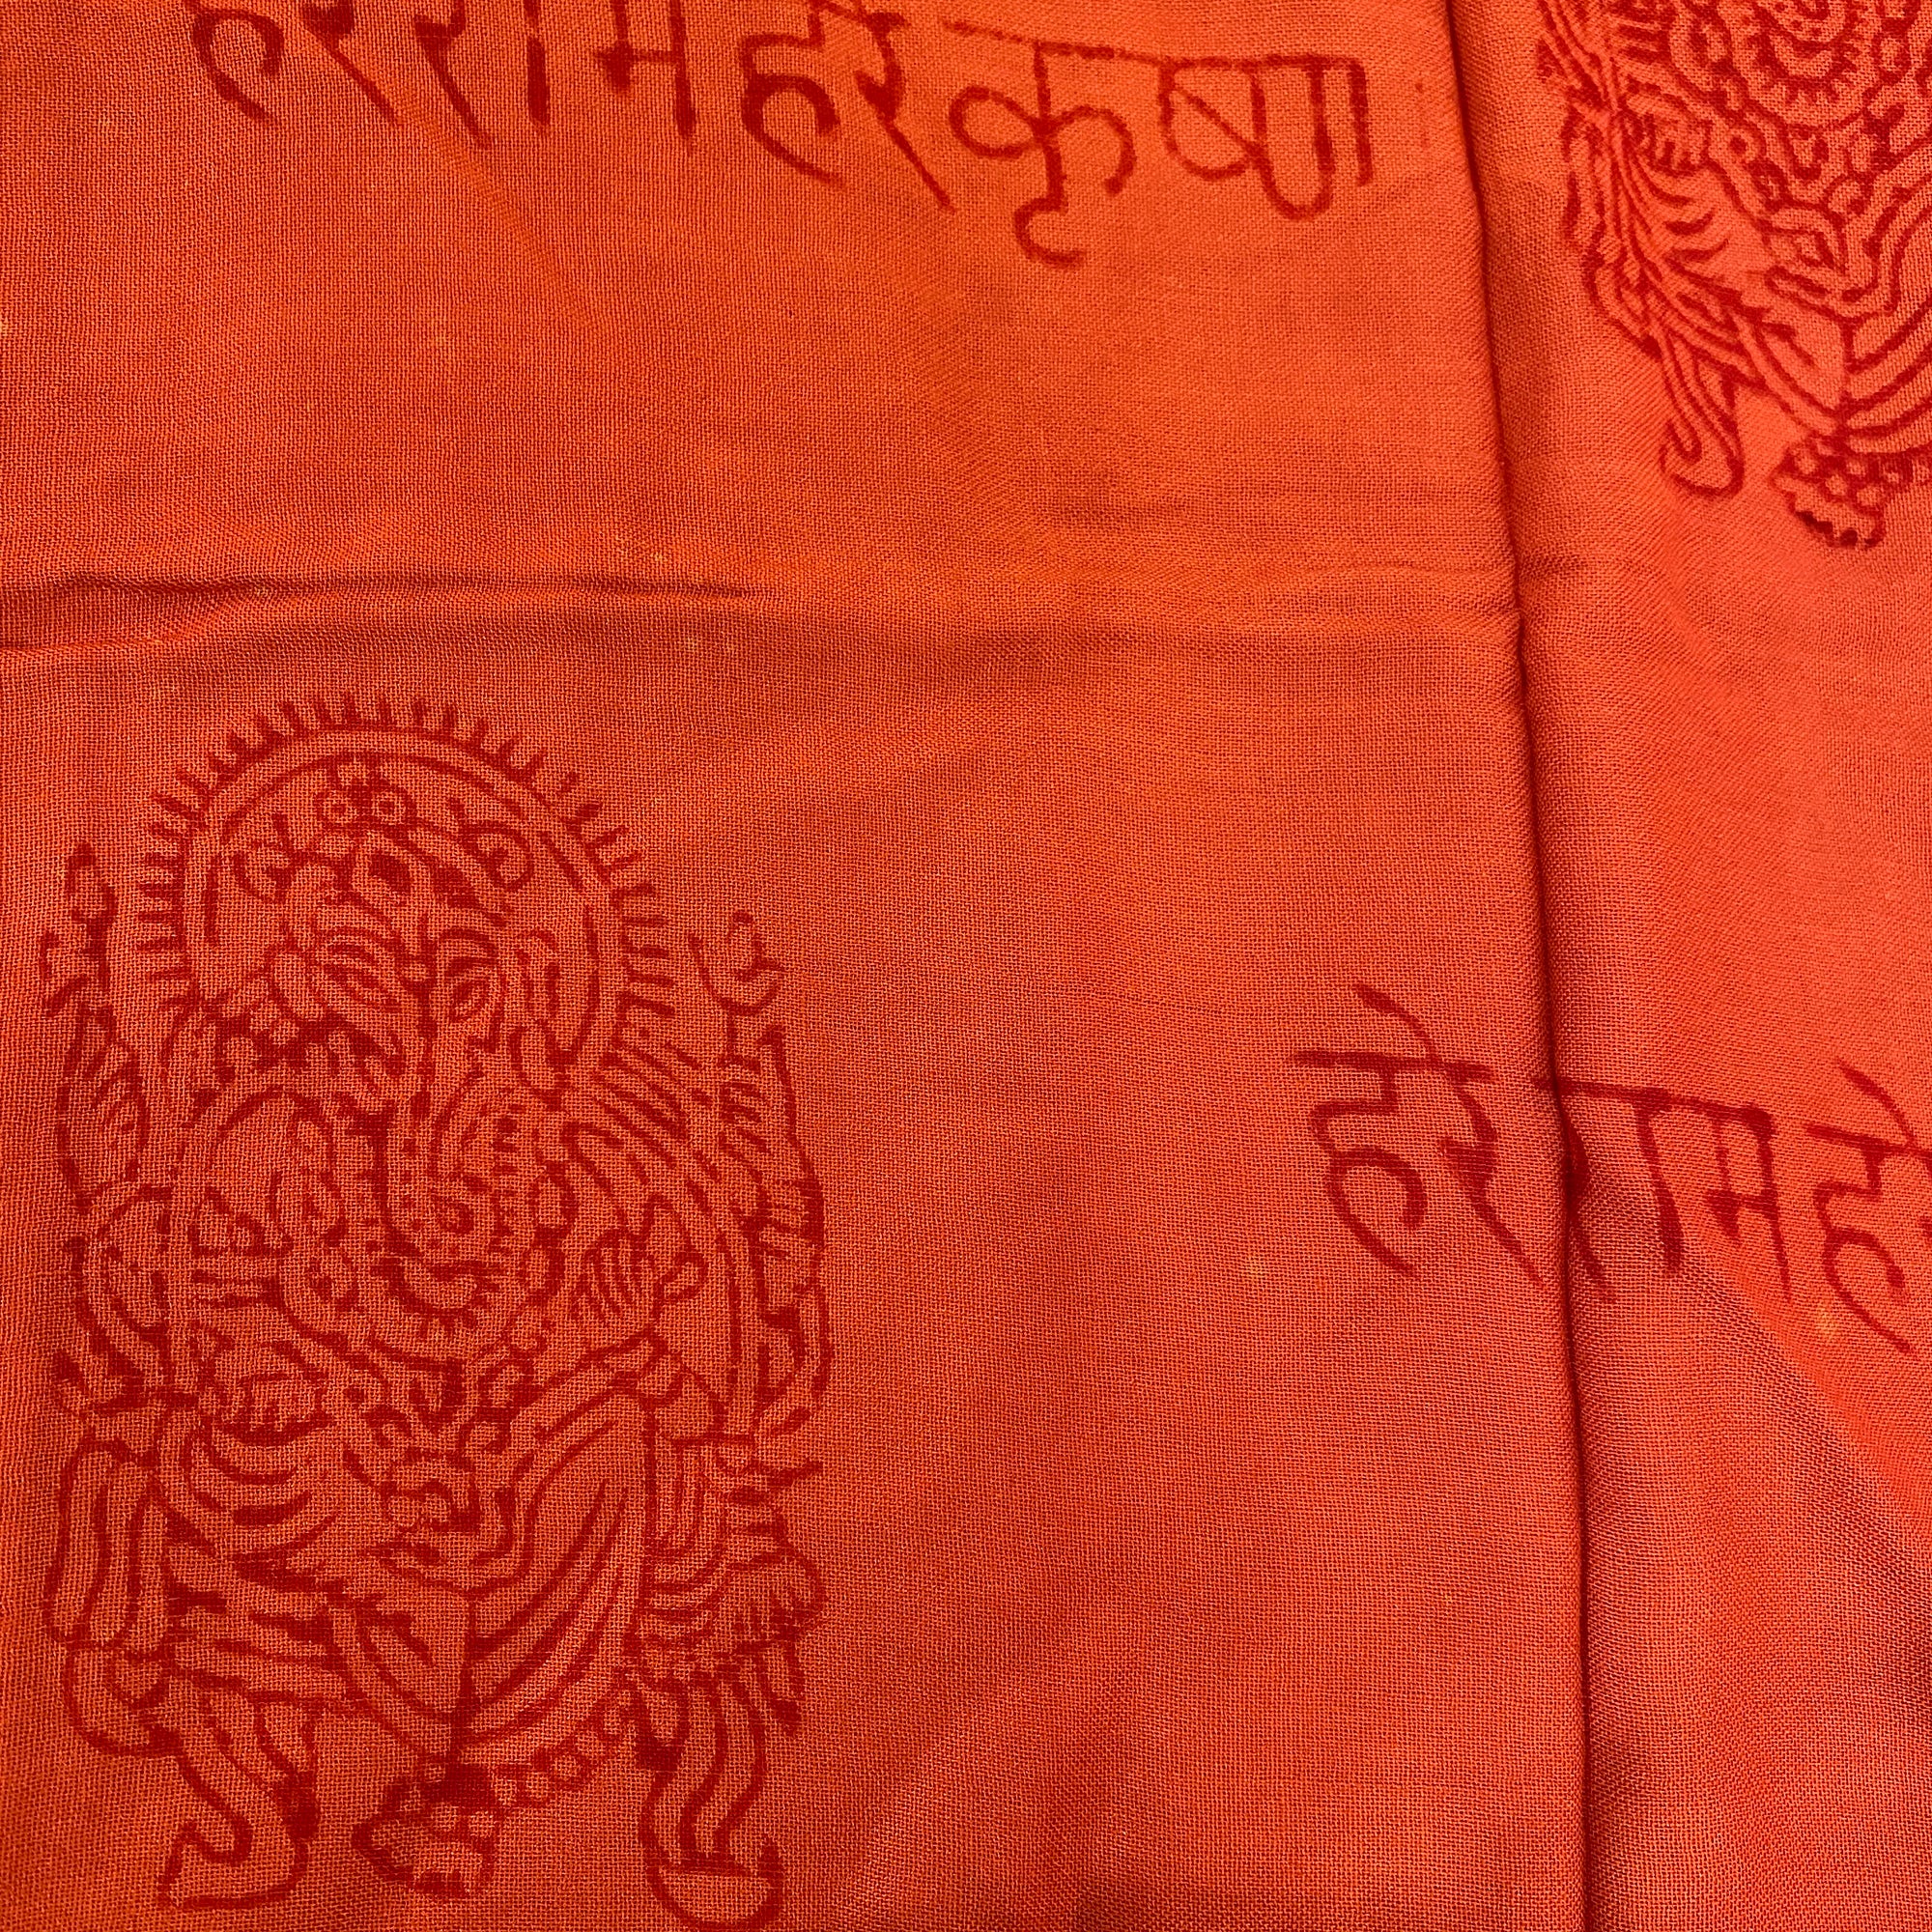 SA Mantra Shawls - Vintage India NYC